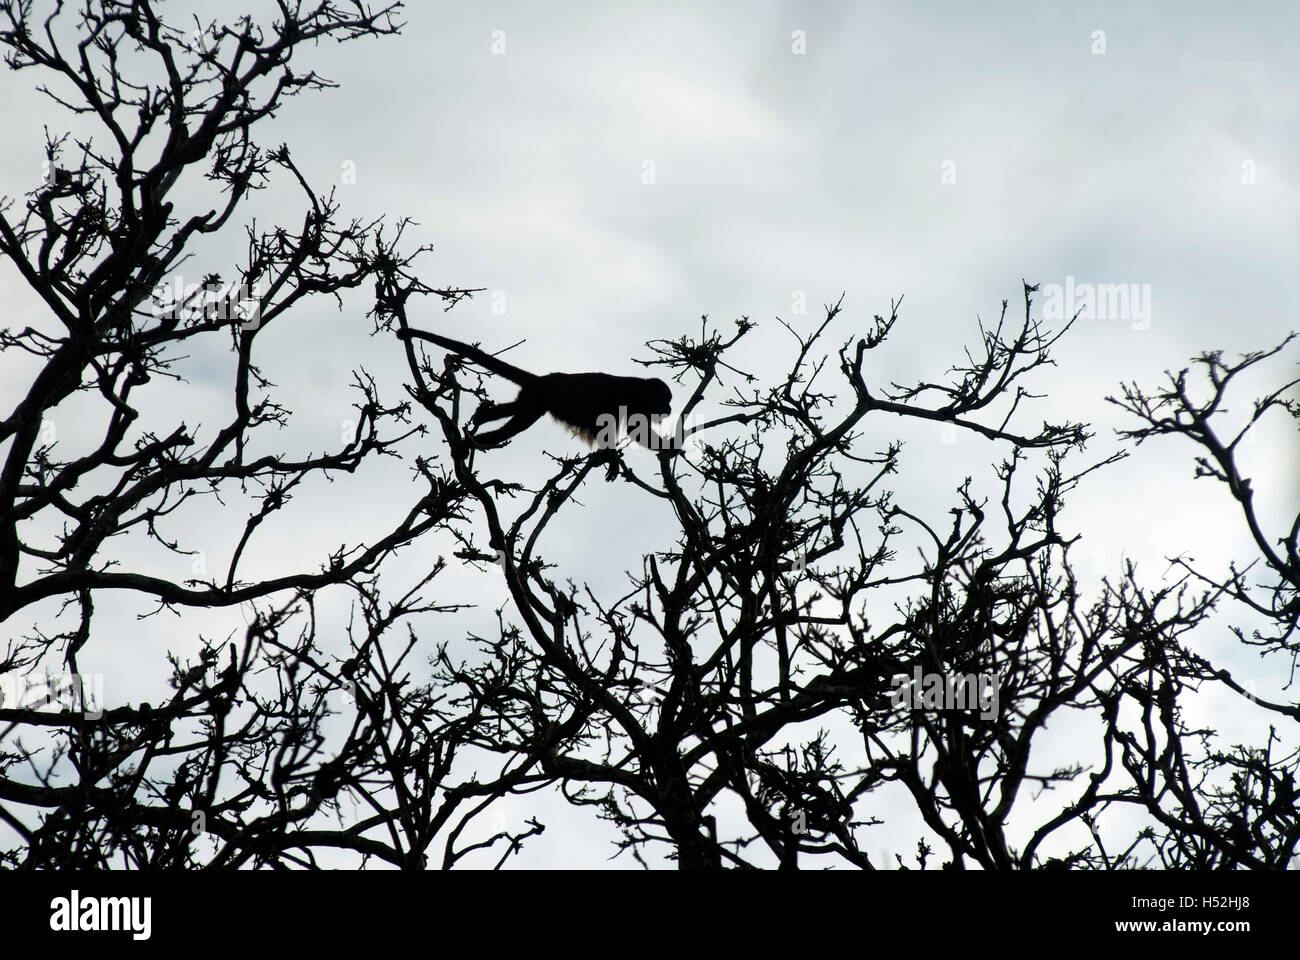 Ein Mantled Brüllaffen Silhouette gegen den Himmel, greifen mit ihren Greifschwanz wie es springt von Ast zu Ast. Stockfoto